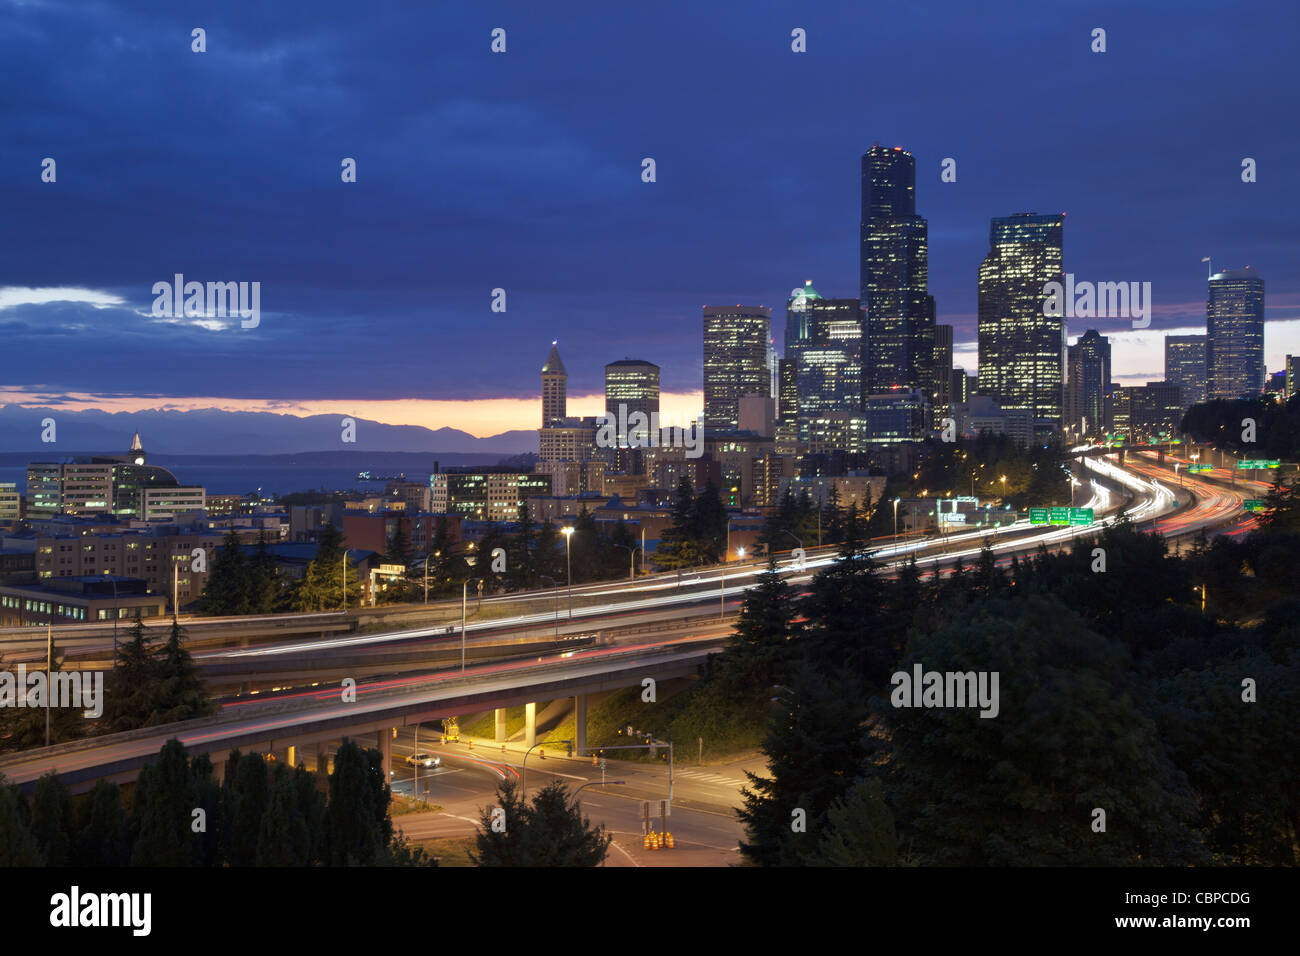 Luci della città al tramonto con il Puget Sound e montagne olimpiche, Seattle Washington, Stati Uniti d'America Foto Stock